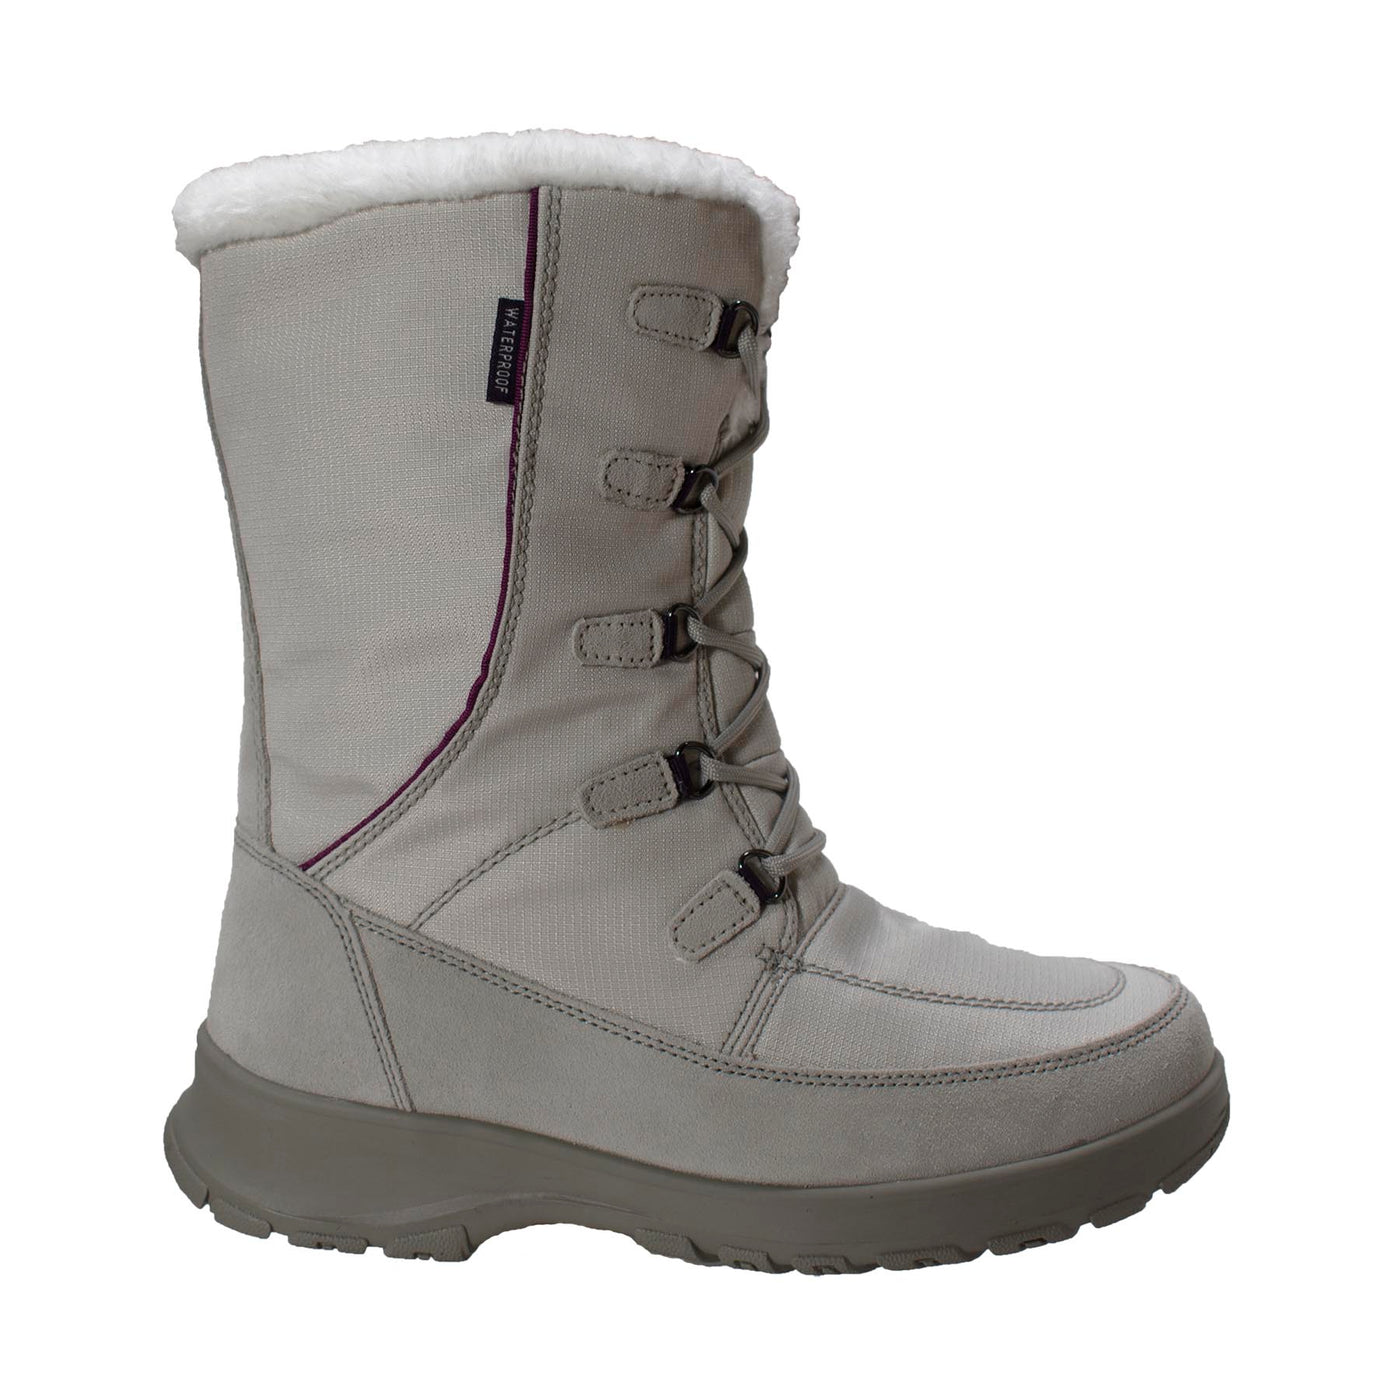 Womens Waterproof Nylon Winter Boot - Shop Genuine Leather men & women's boots online | AdTecFootWear